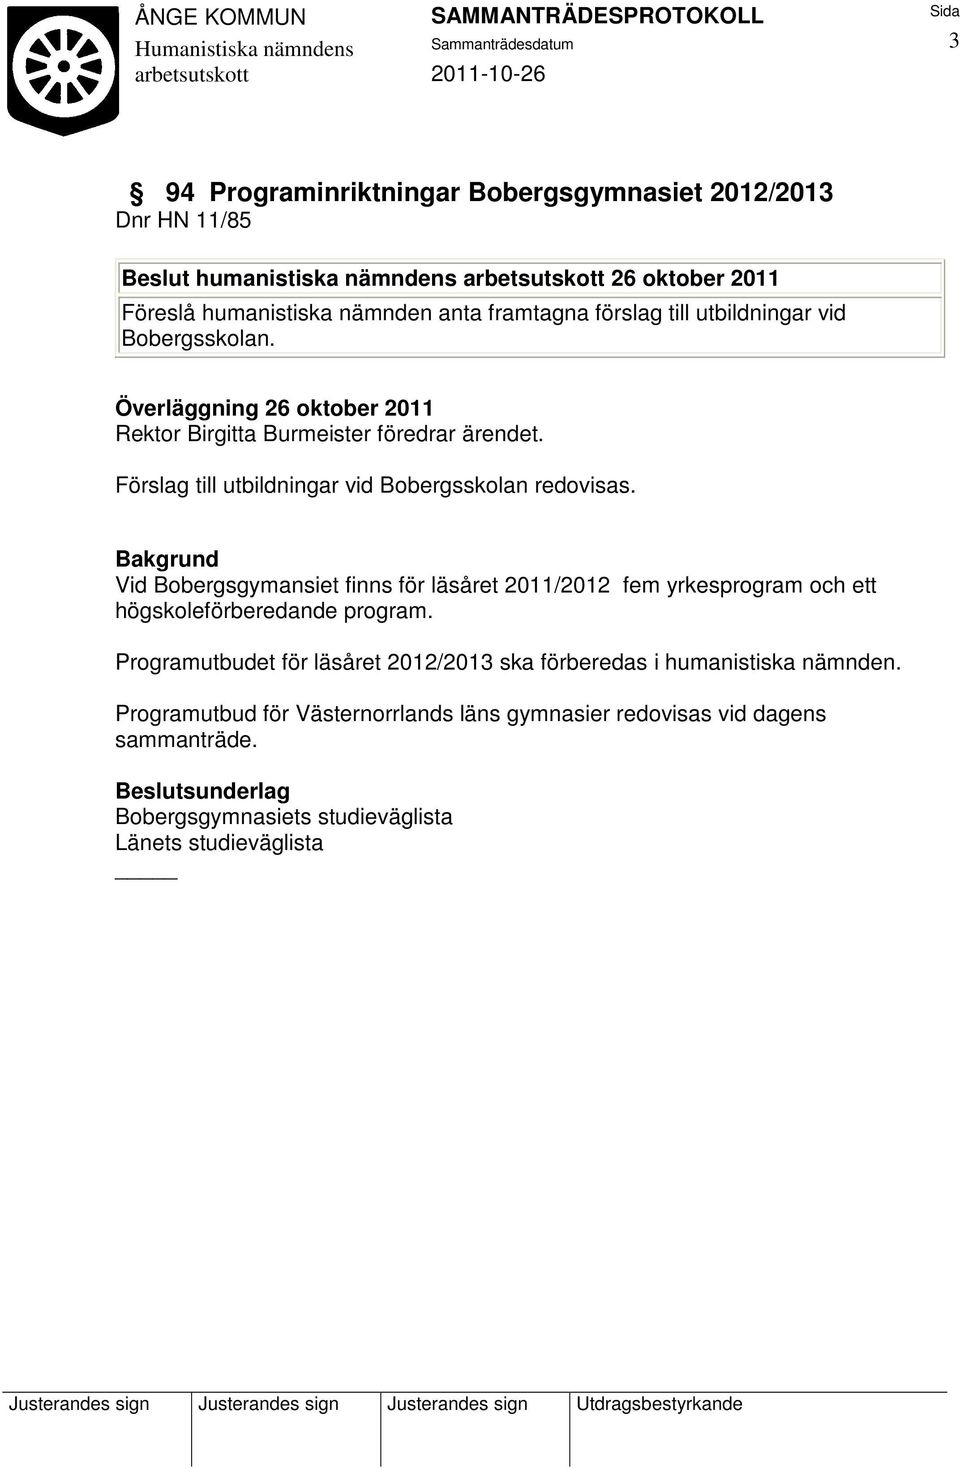 Vid Bobergsgymansiet finns för läsåret 2011/2012 fem yrkesprogram och ett högskoleförberedande program.